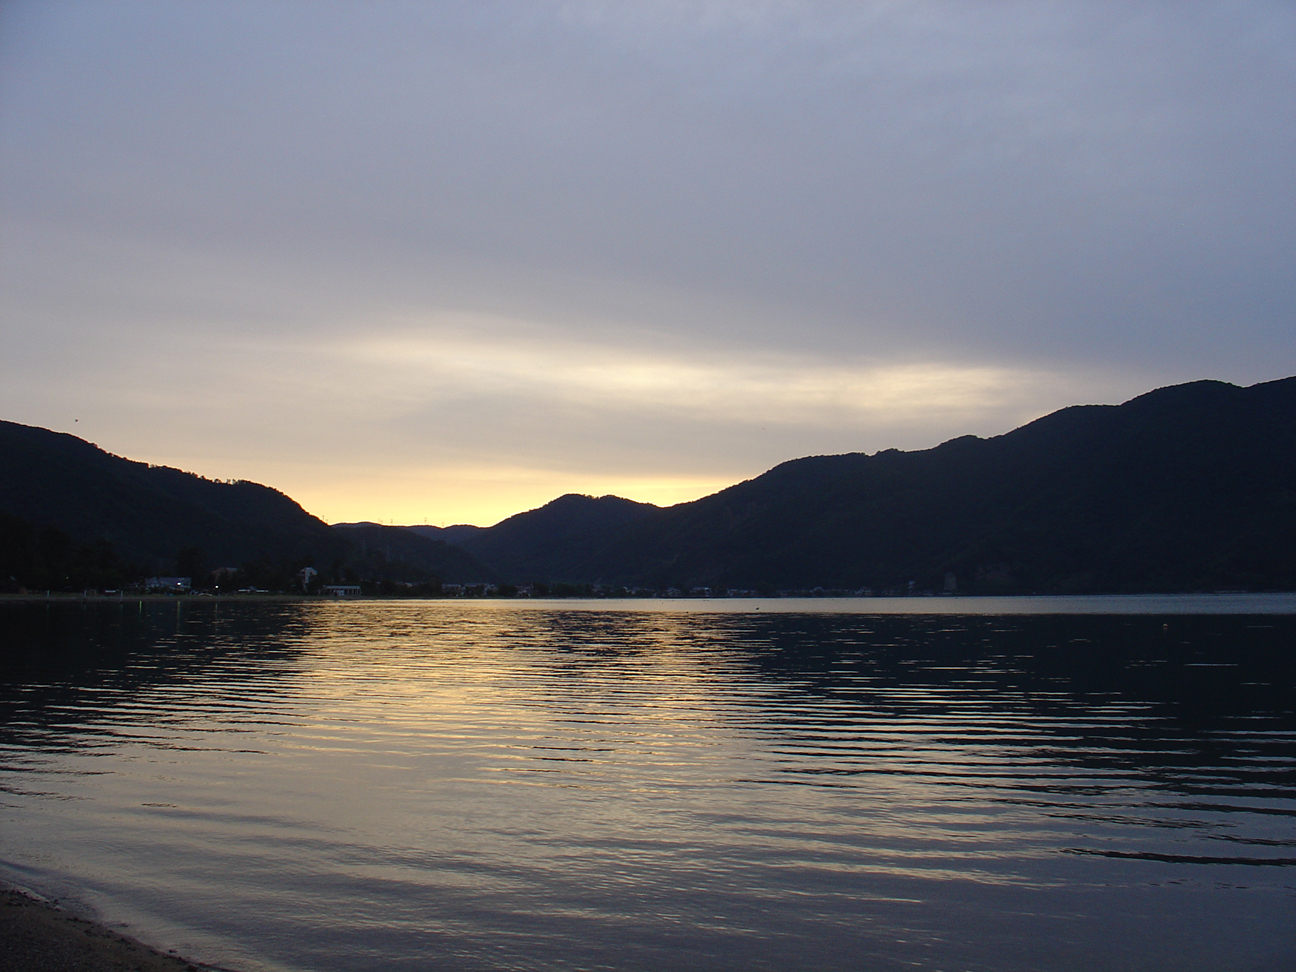 Sunrise at the lake.